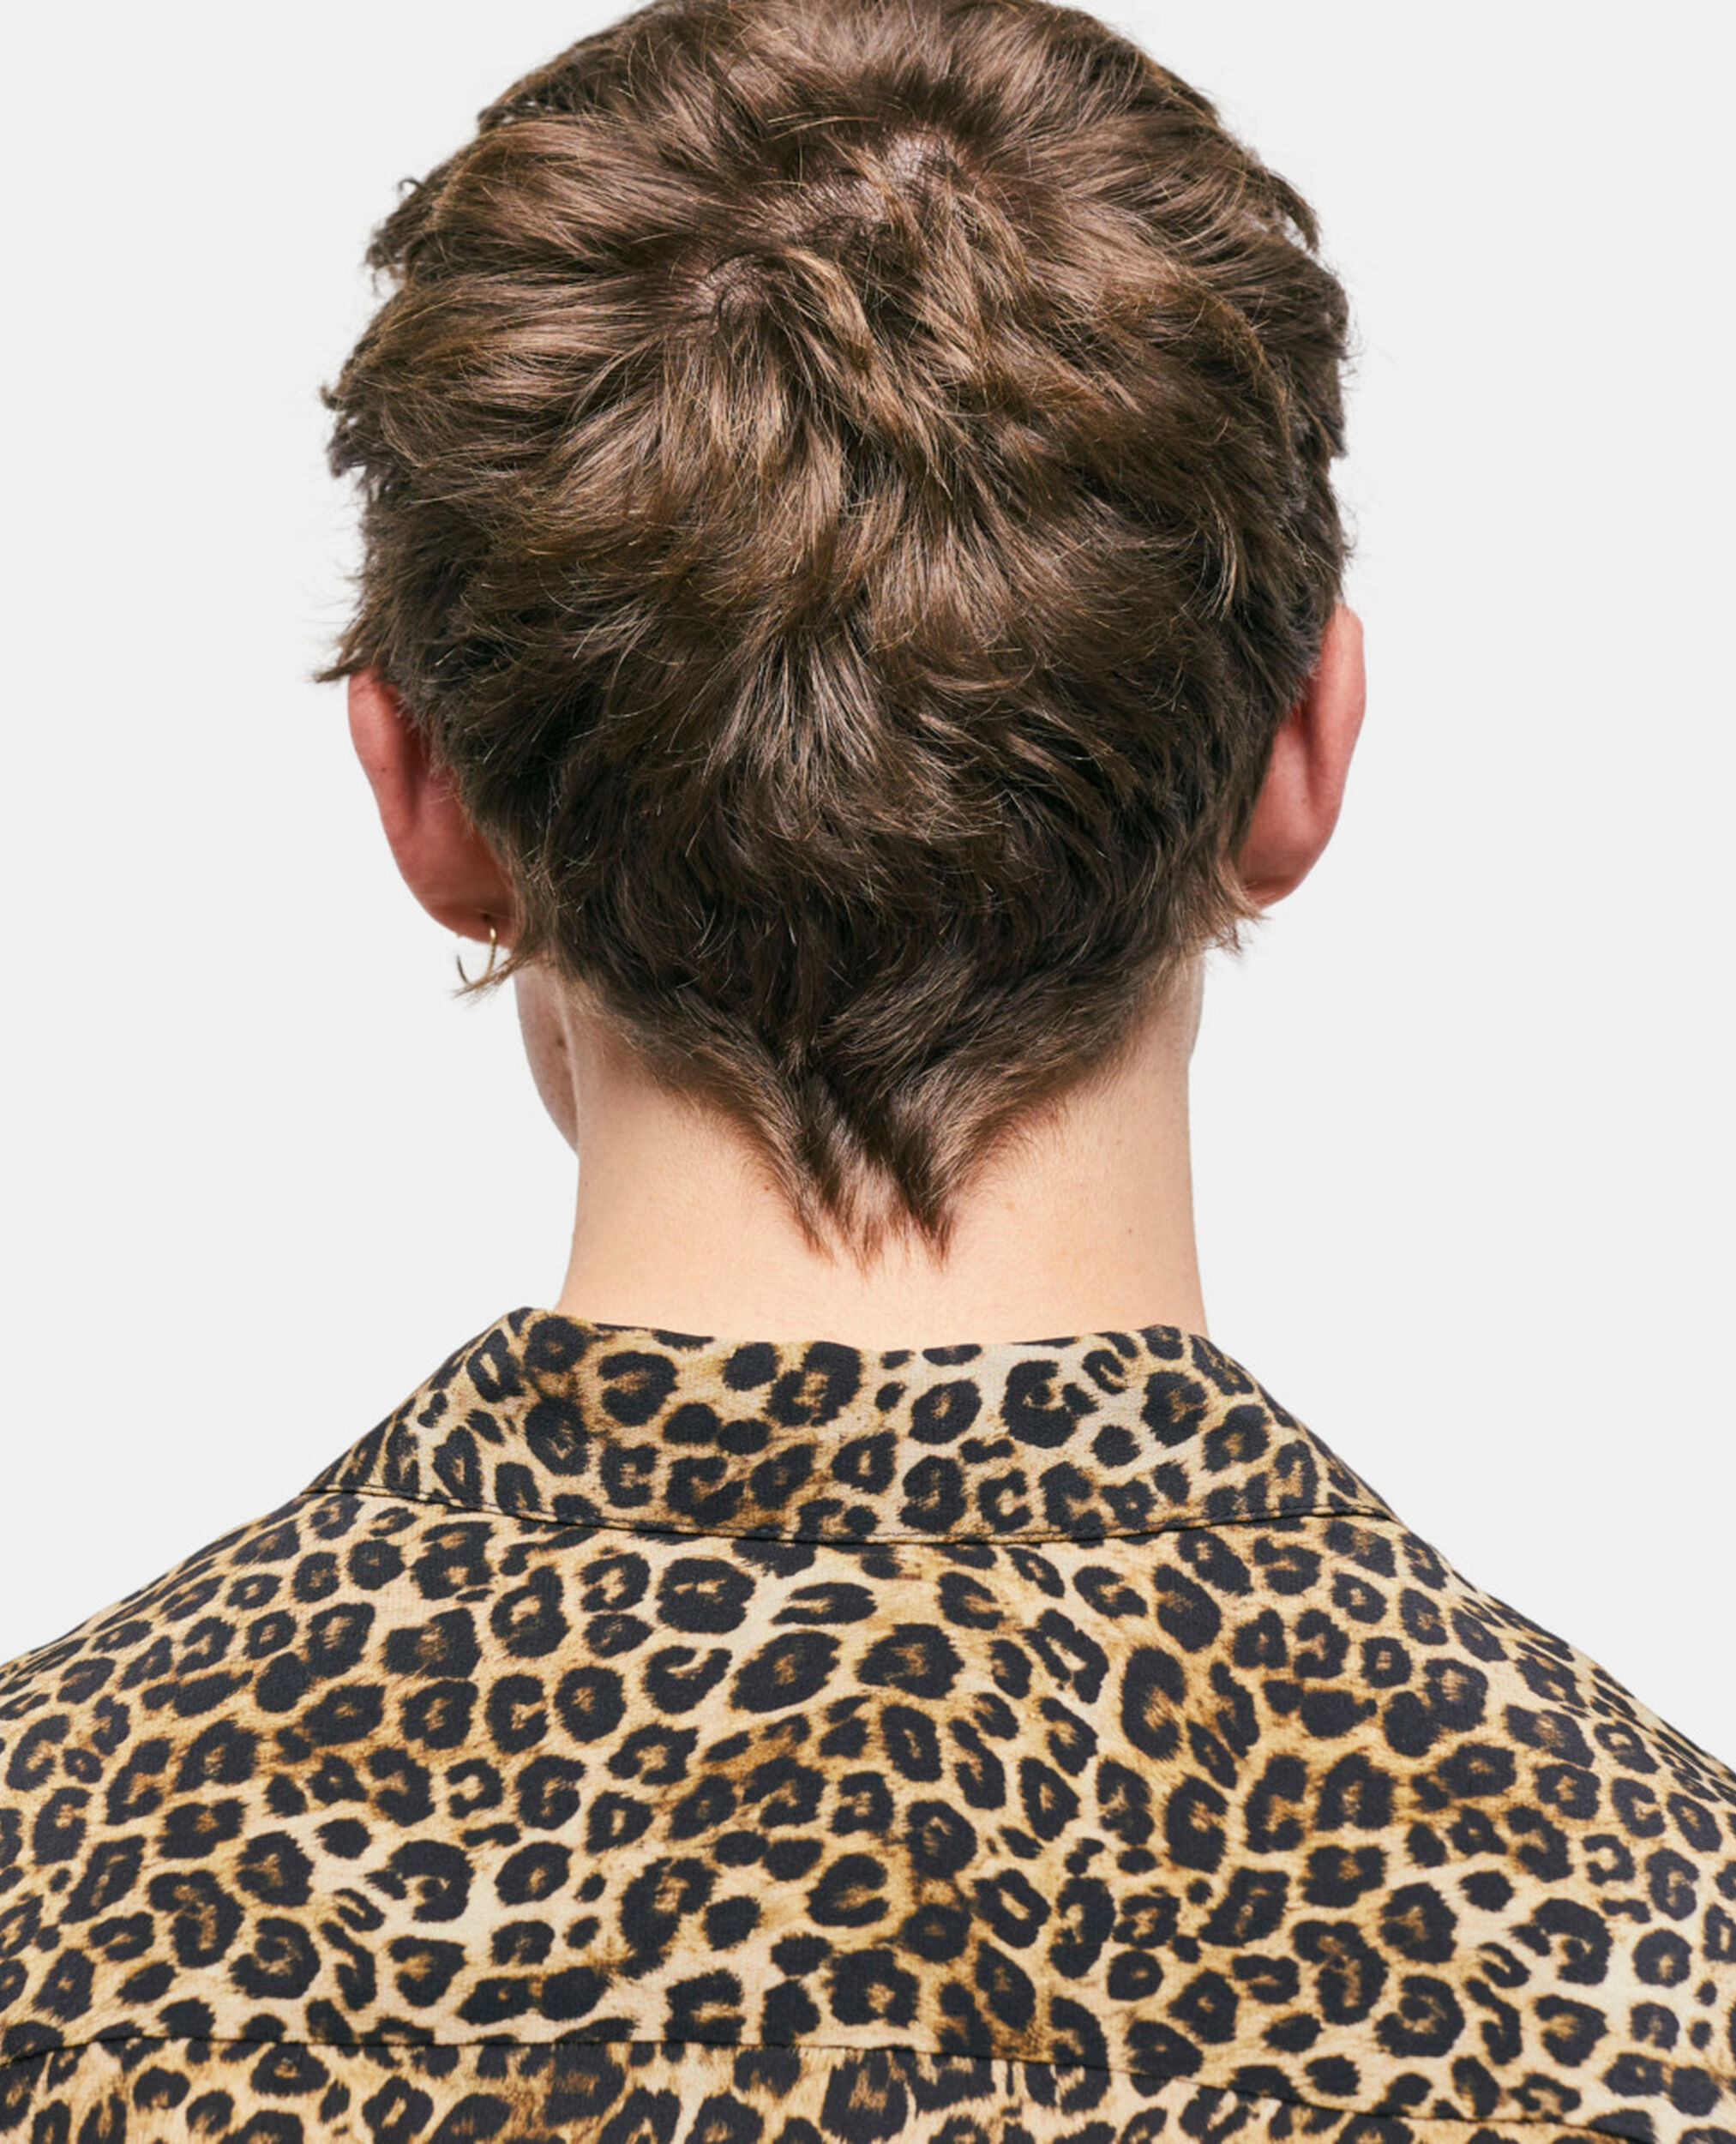 Camisa de seda leopardo con cuello clásico, LEOPARD, hi-res image number null